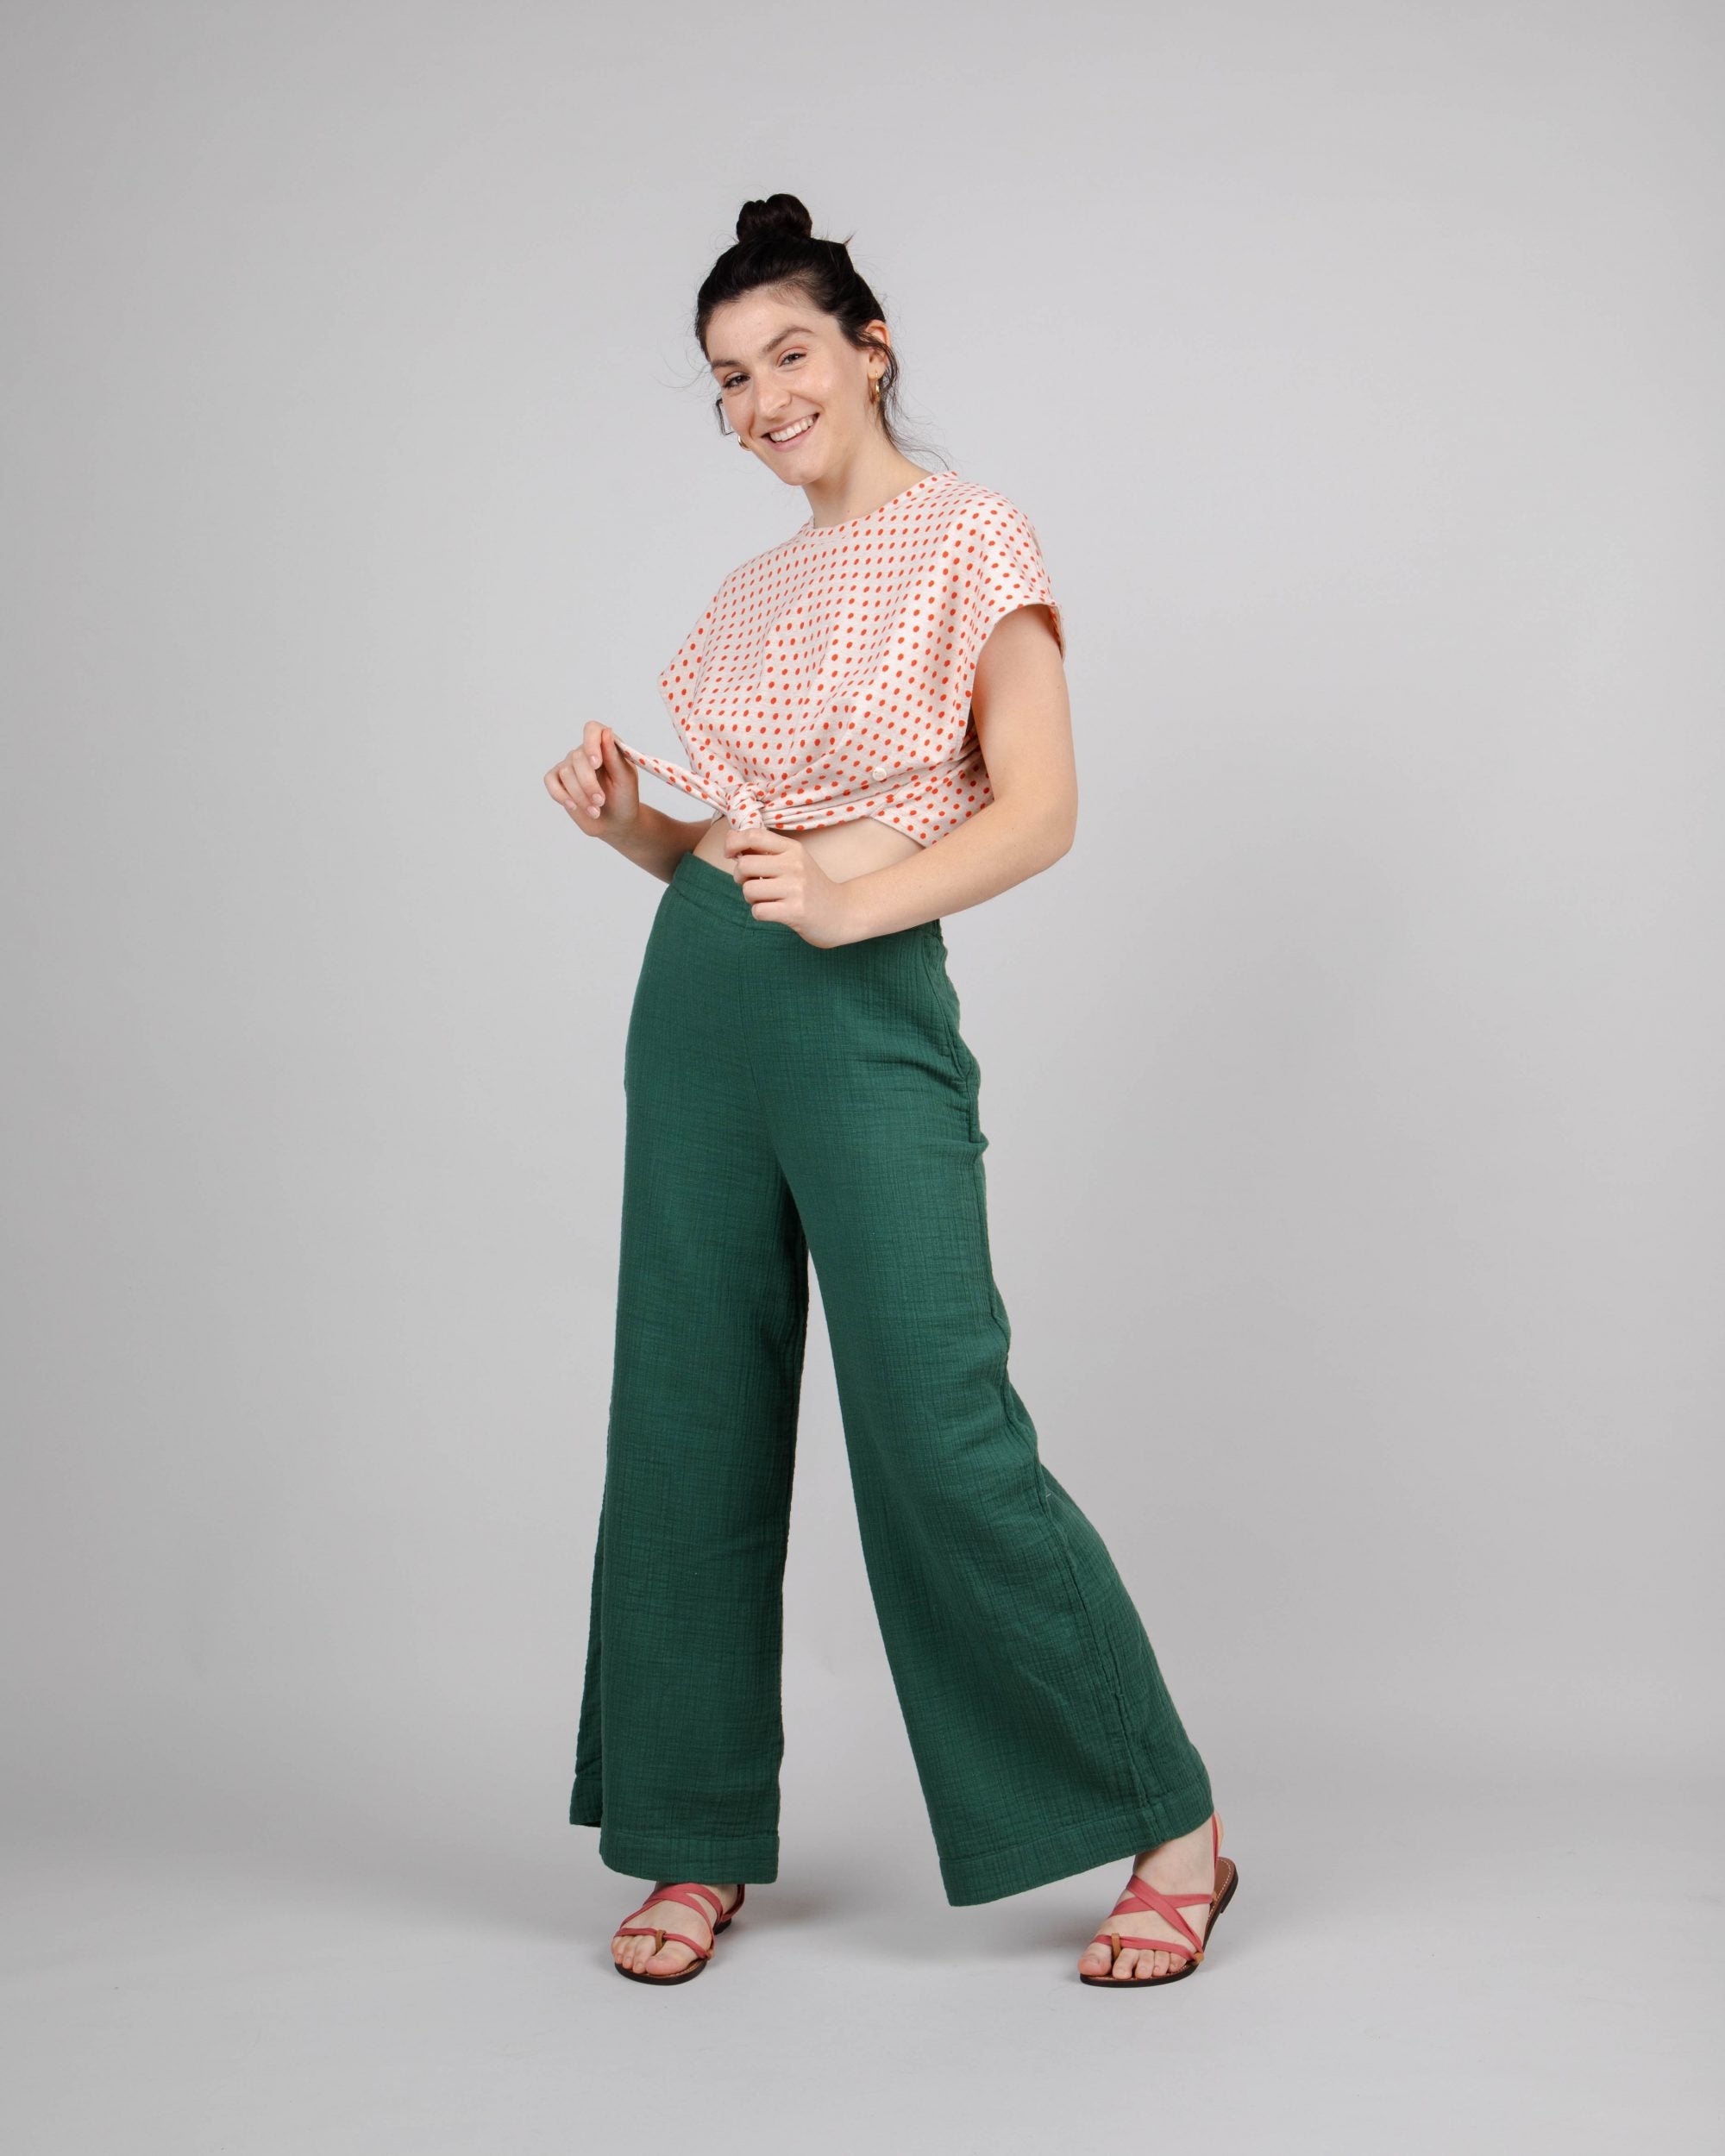 Pantalon ample pour femme vert en coton bio 